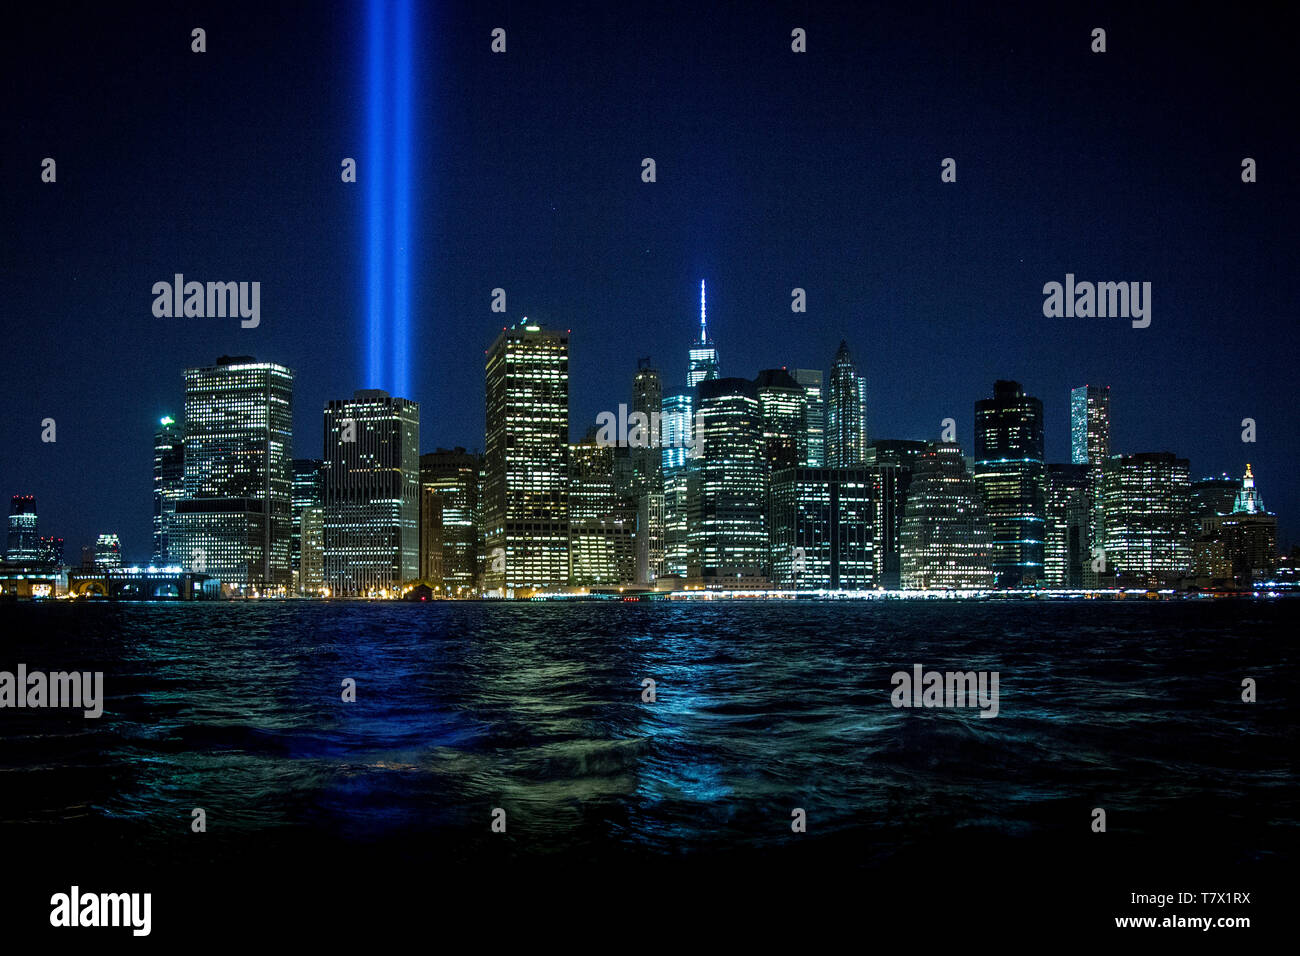 Le Torri di fascio di luce verso il cielo sul tredicesimo anniversario dell'attacco dell'11 settembre che ha portato giù il World Trade Center e ucciso 2996 persone. Foto Stock